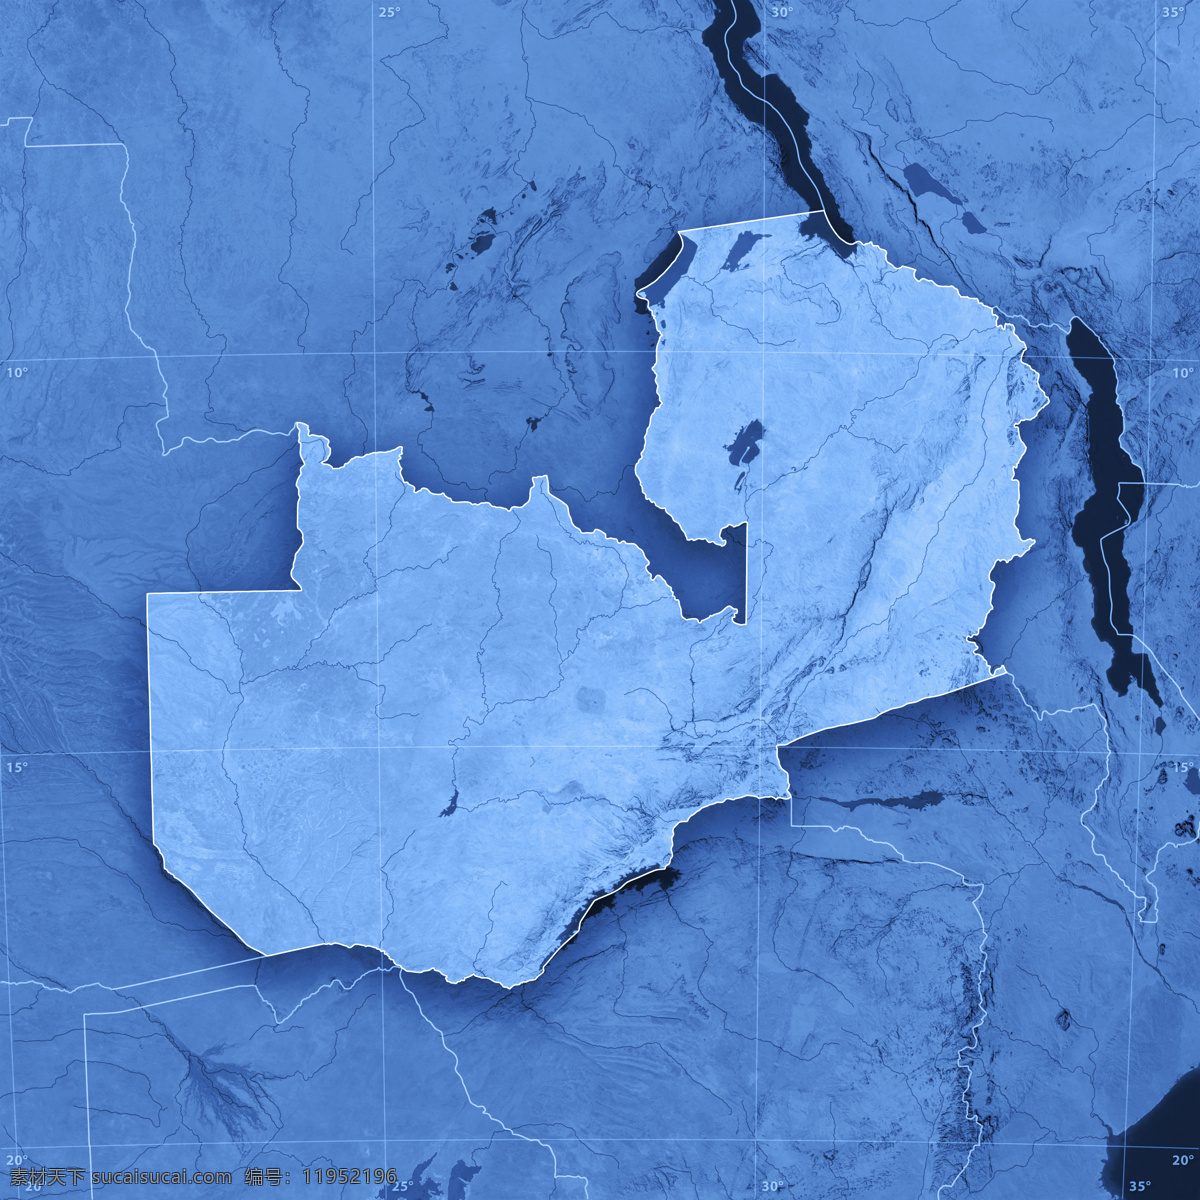 蓝色3d地图 地图 蓝色地图 地图模板 经线 纬线 经度 纬度 办公学习 其他类别 生活百科